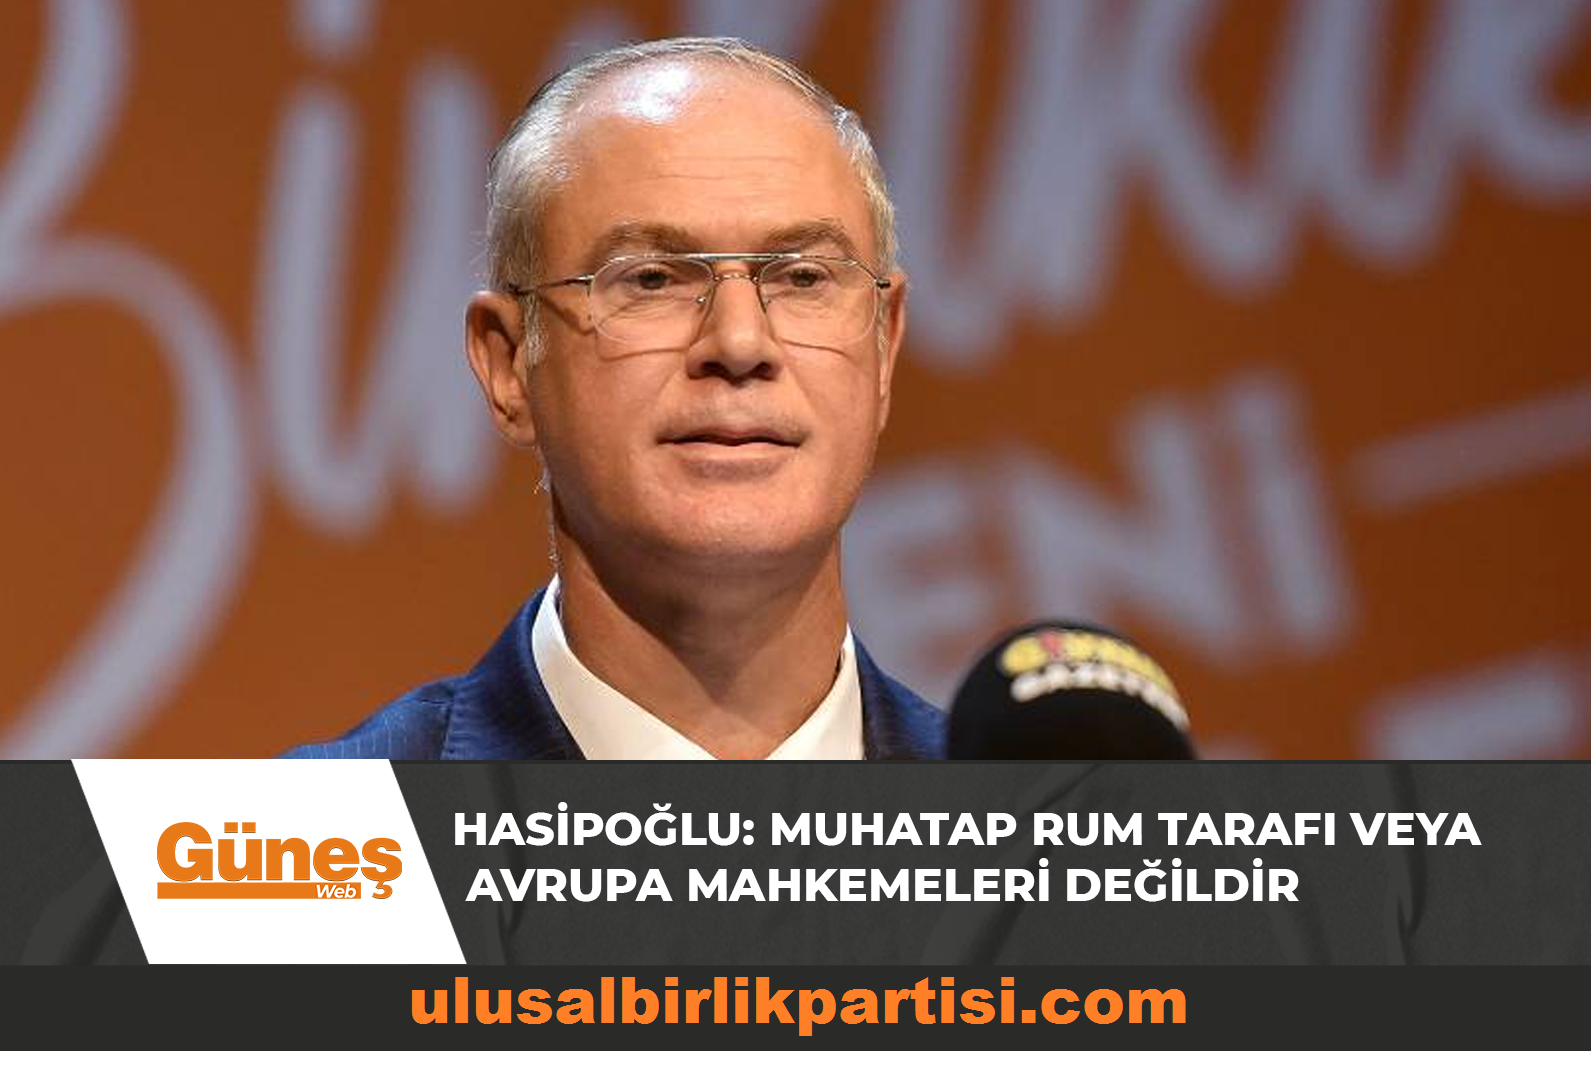 You are currently viewing Hasipoğlu: Muhatap Rum tarafı veya Avrupa Mahkemeleri değildir